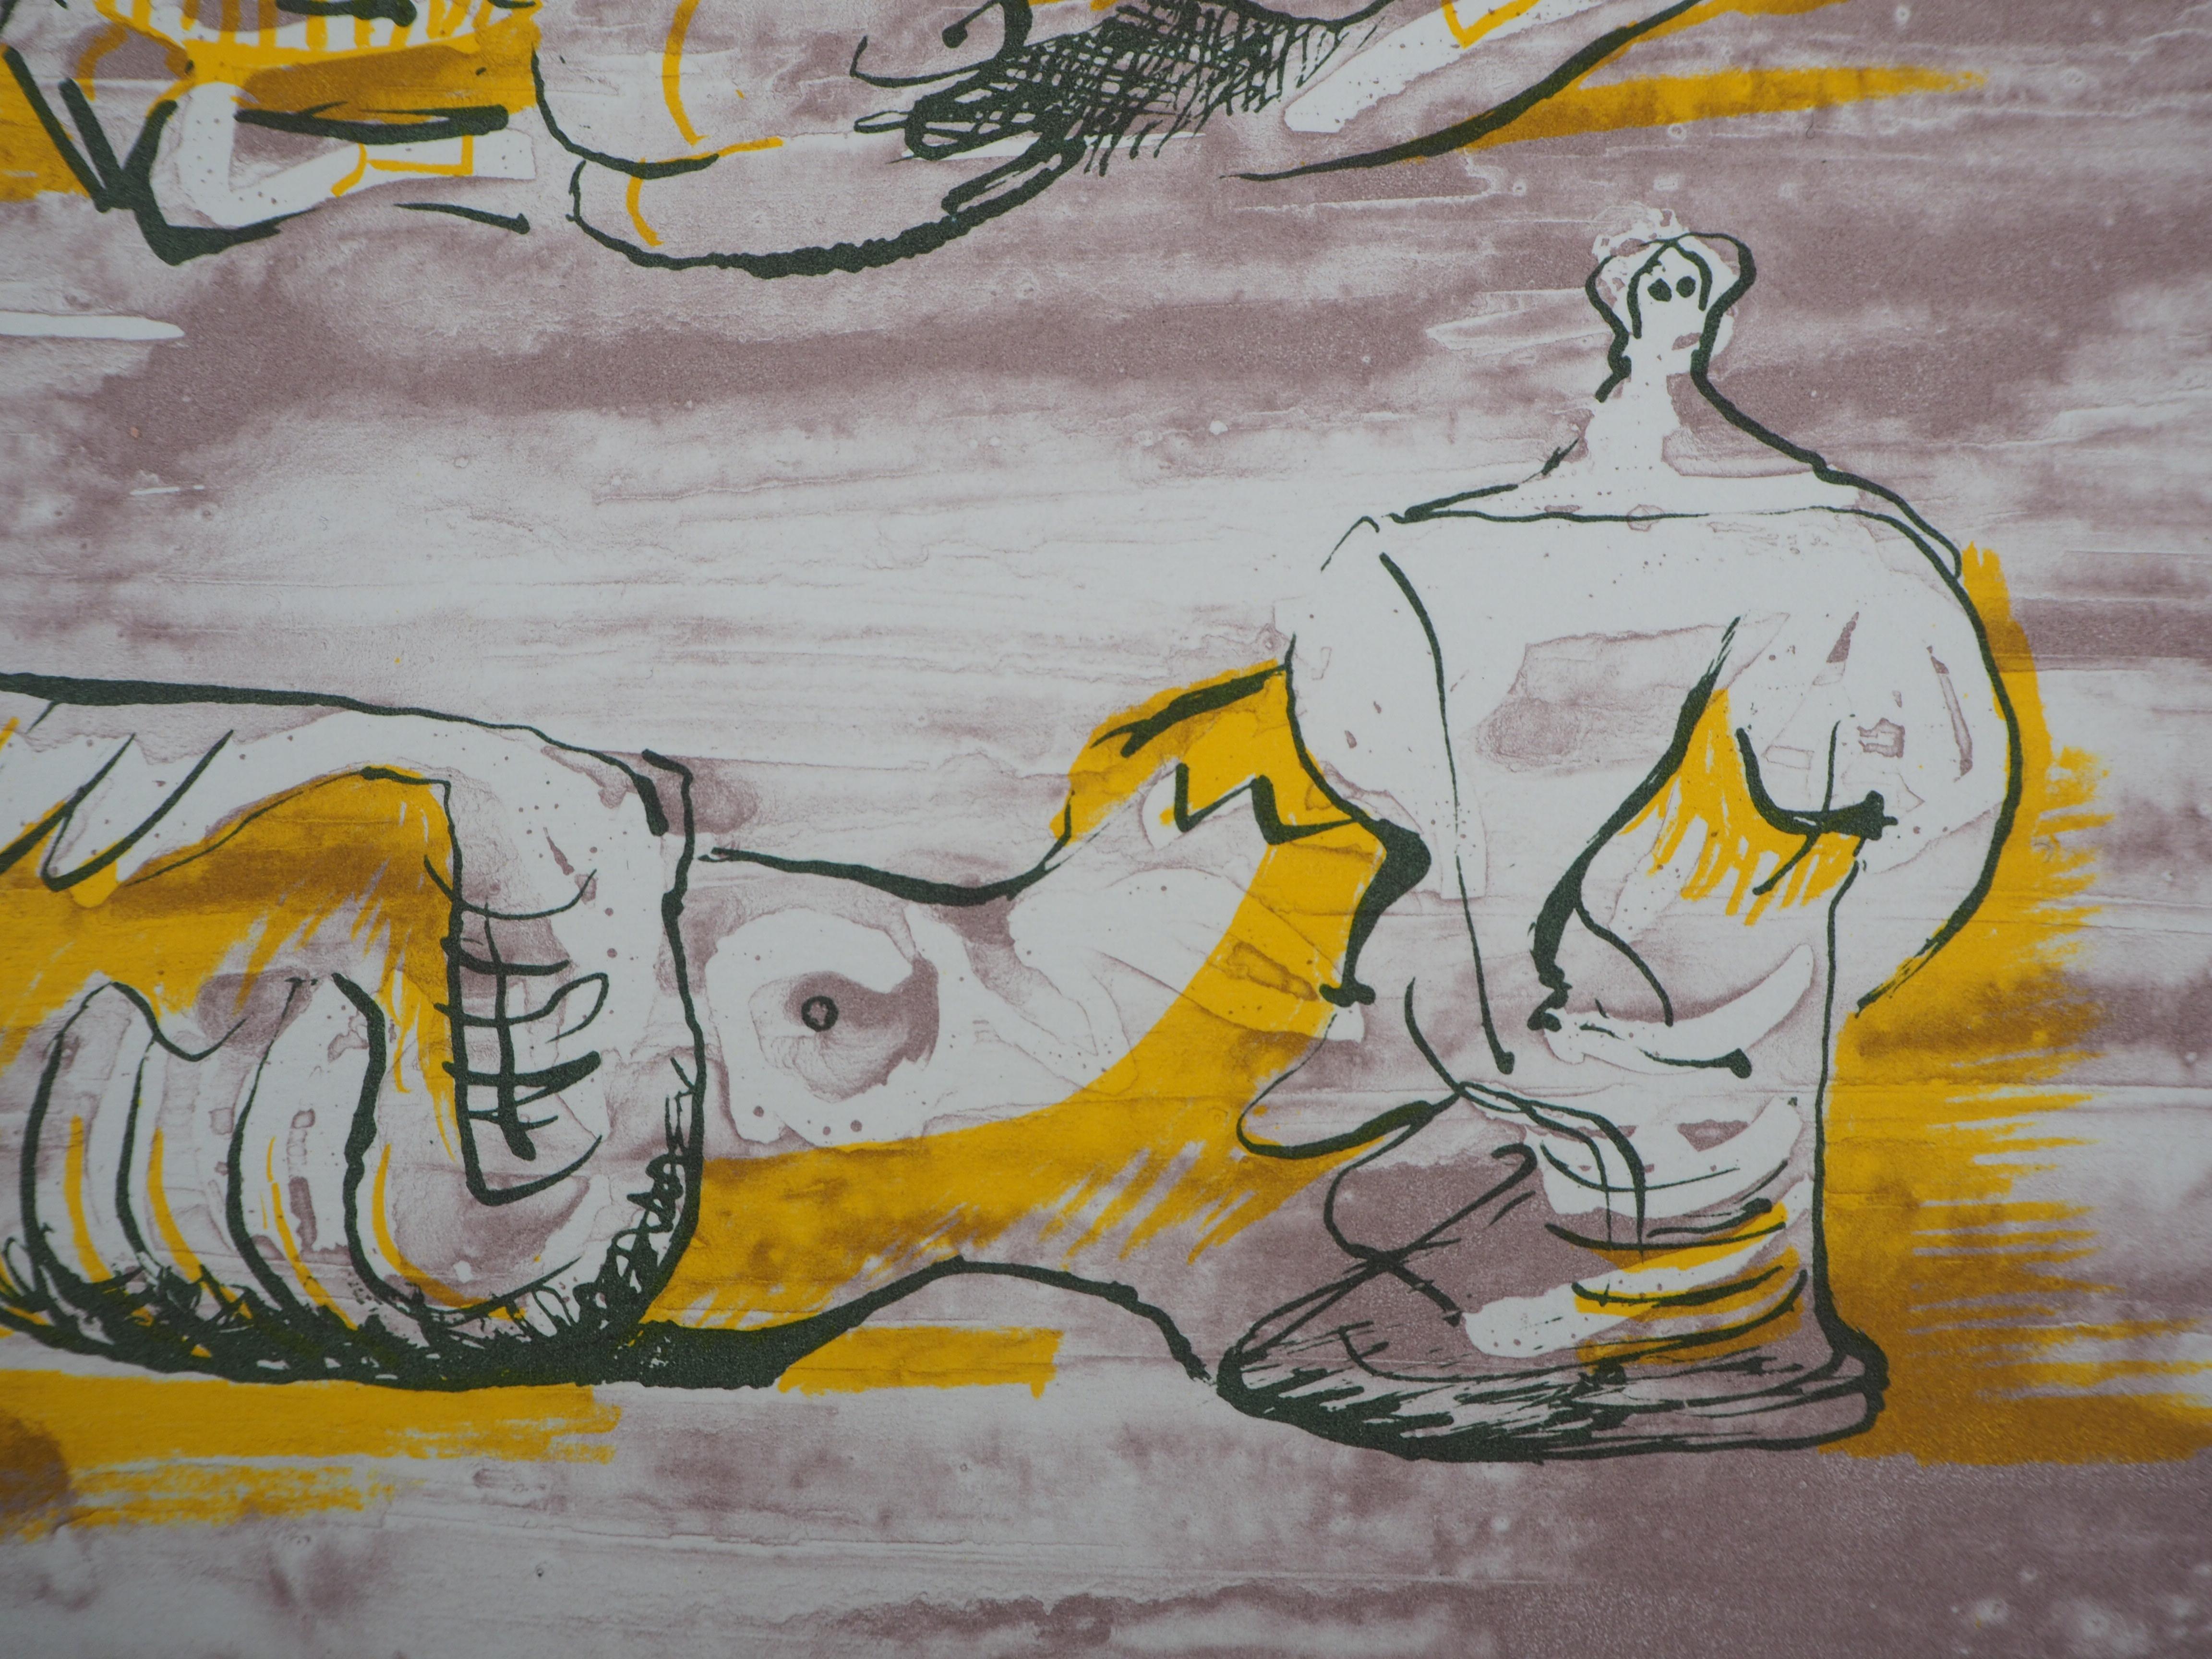 HENRY MOORE
Drei liegende Akte, 1971

Original-Lithografie (gedruckt in der Werkstatt Desjobert).
Auf Velin 31 x 24 cm (ca. 12 x 10 Zoll)
Herausgegeben von San Lazarro, 1971

REFERENZEN : Henry Moore Katalog der graphischen Werke, (Hrsg. Cramer,